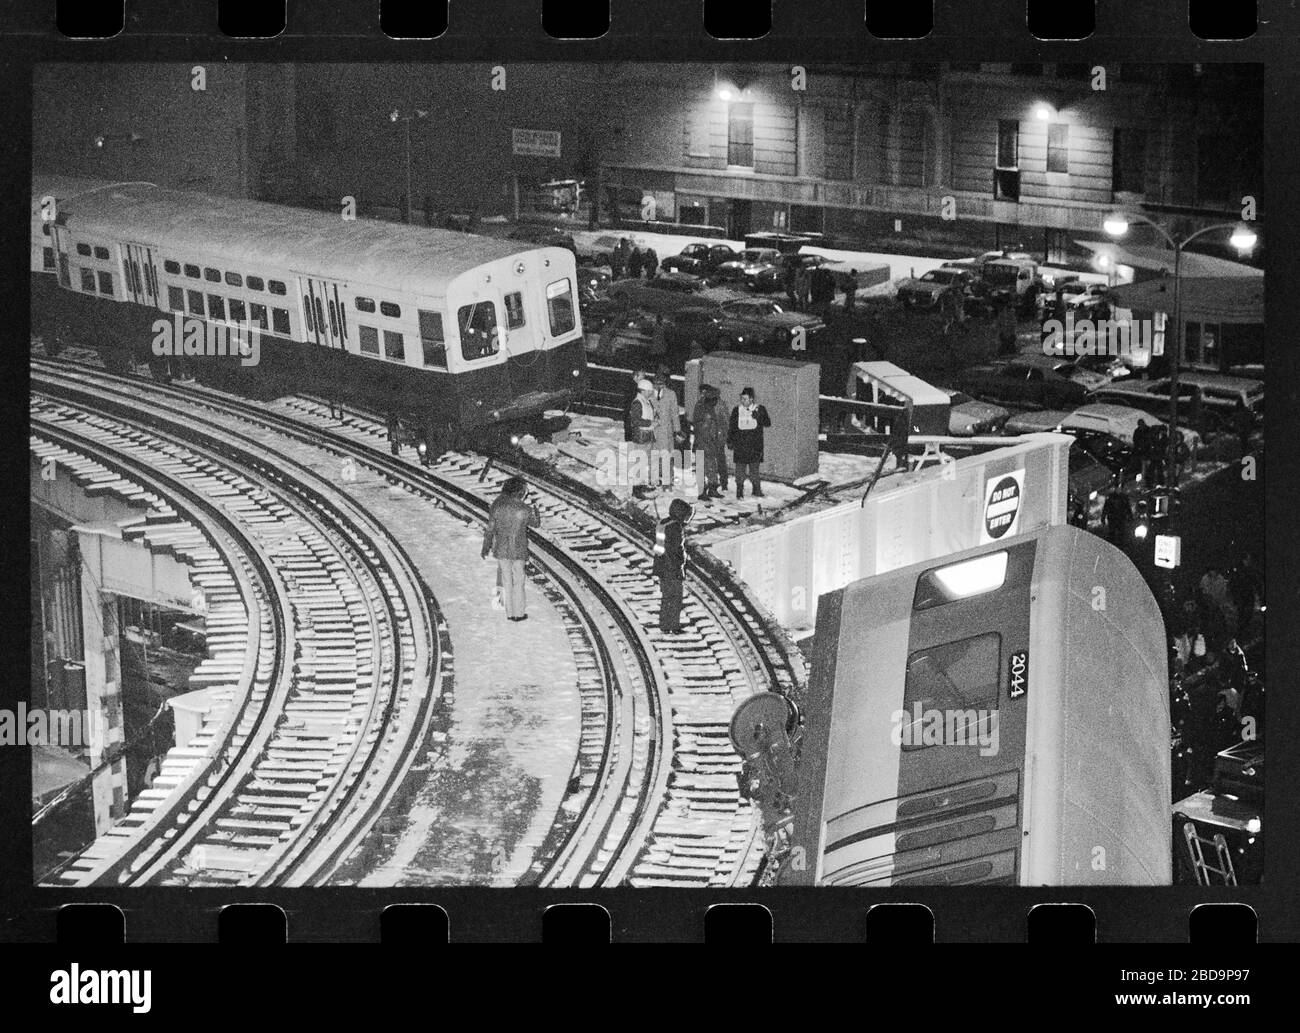 Erhöhte Entgleisungen des El-Zuges in Chicago, Illinois am Freitagabend, 4. Februar 1977. Zugwagen fallen wegen einer Kollision an der Kurvenkreuzung von Lake Street und Wabash Avenue auf die Straßenebene von Chicago Loop. Bild von 35 mm negativ. Stockfoto